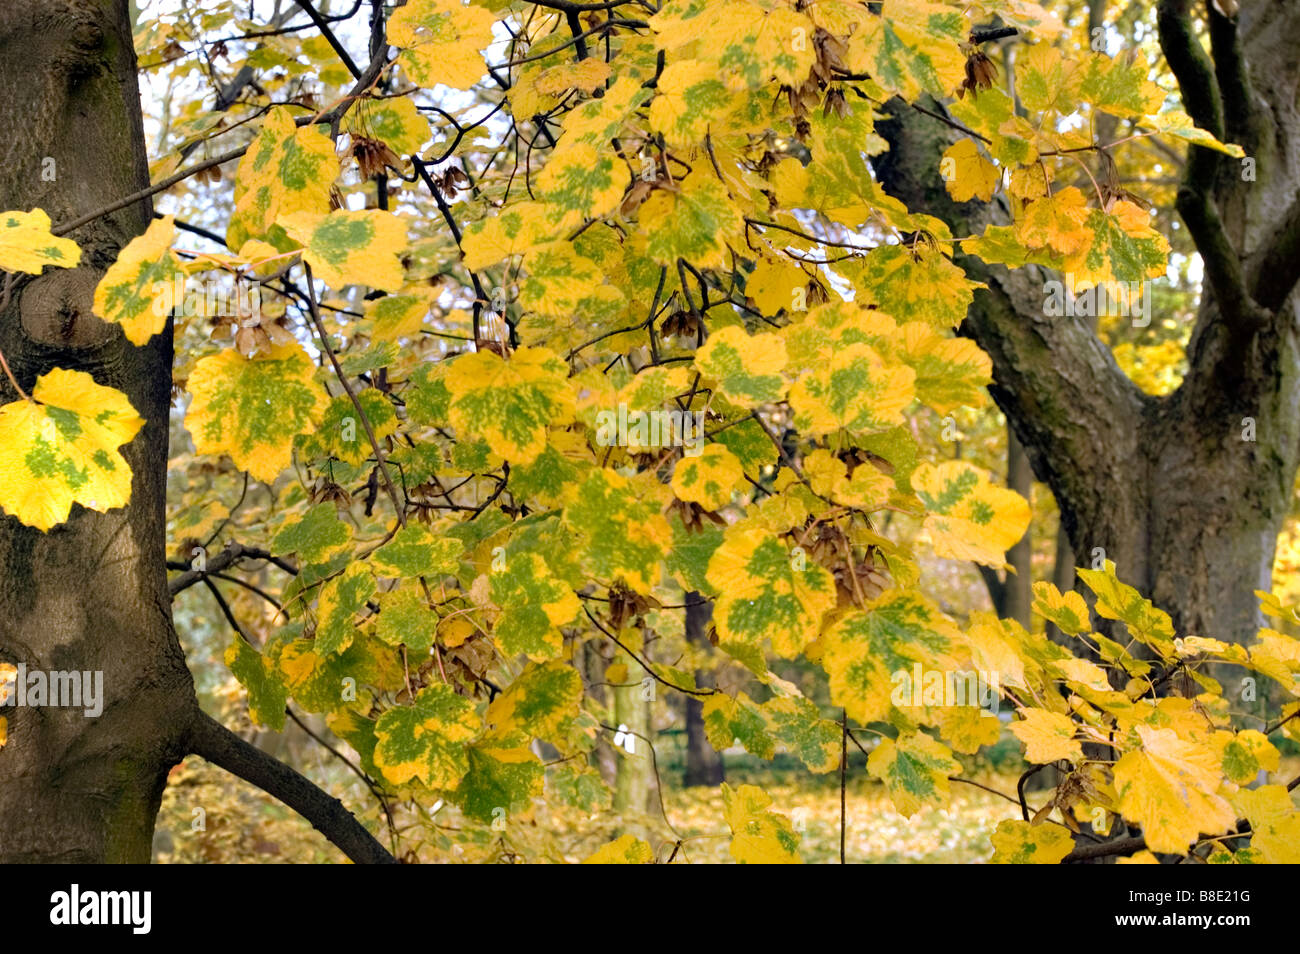 Yellow autumn leaves of Italian maple, Aceraceae, Acer opalus subsp. Obtusatum Stock Photo